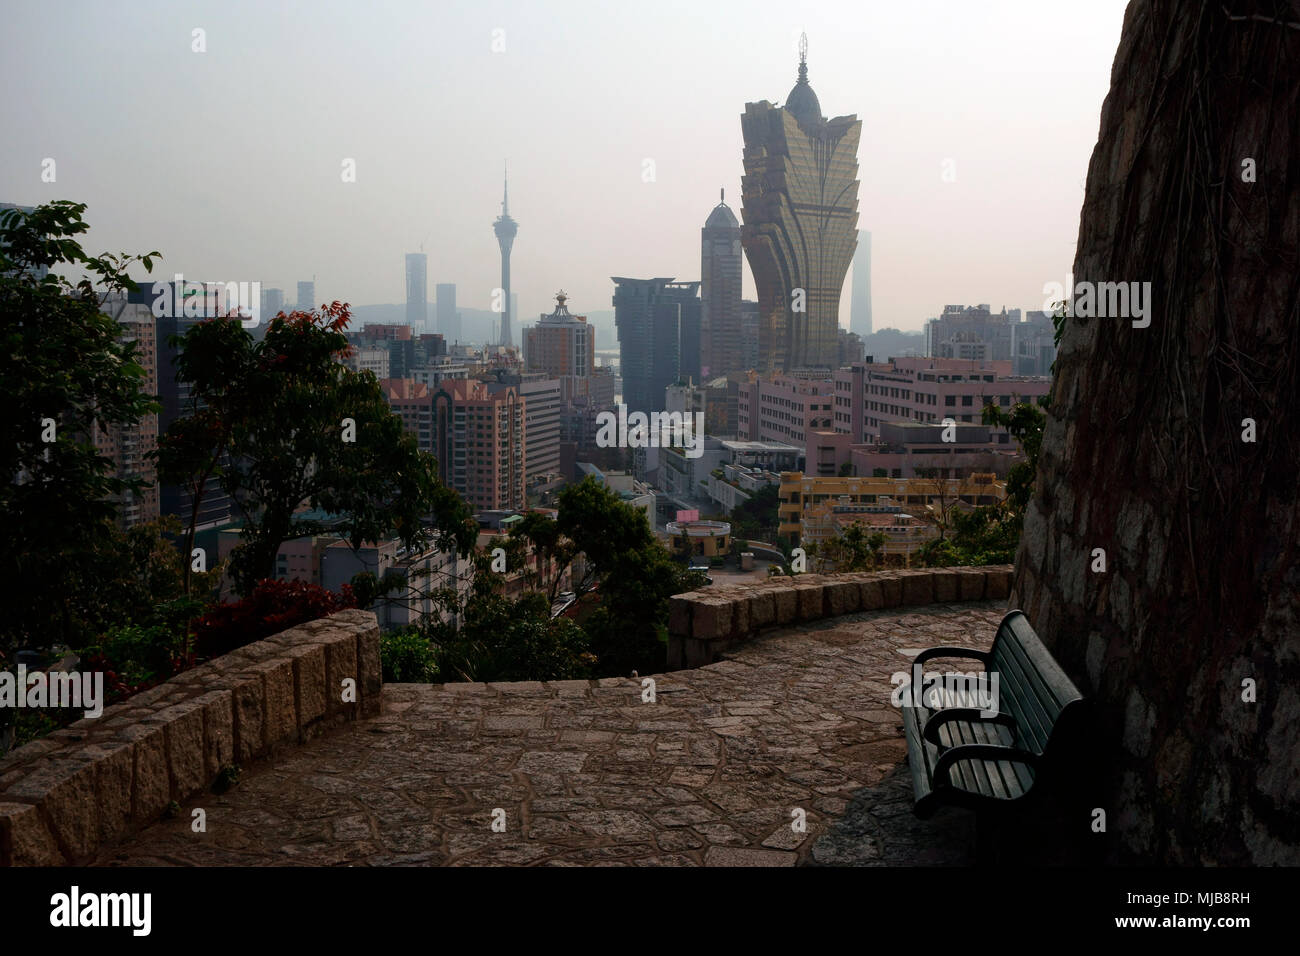 Città di Macau vista da Guia fortezza, il punto più elevato della Penisola di Macau, Macao, Regione amministrativa speciale della Repubblica popolare cinese Foto Stock